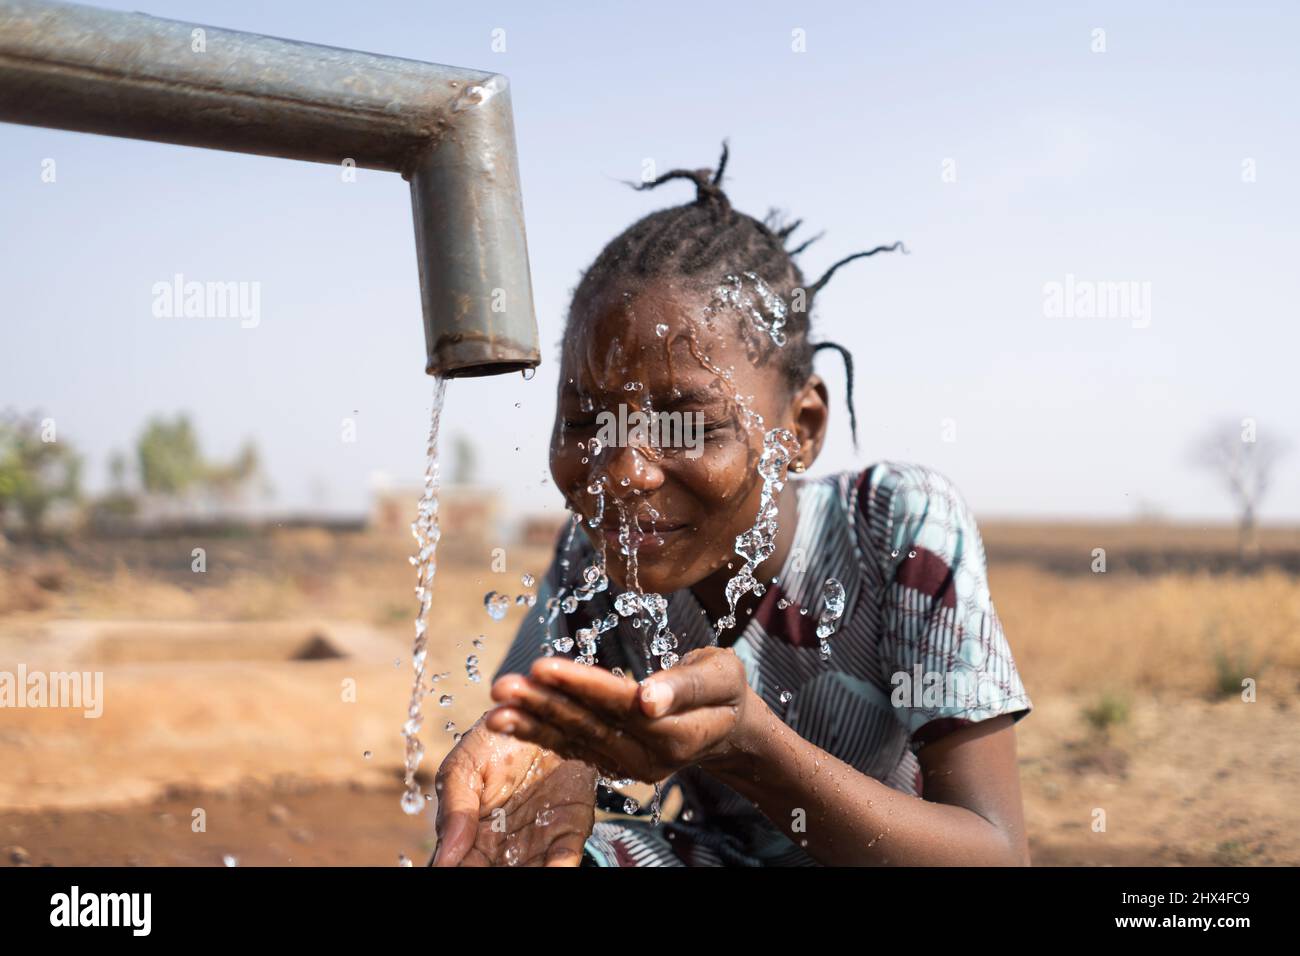 Gros plan d'une belle fille africaine se lavant le visage au point d'eau de la communauté publique ; problème social de pénurie d'eau et de distribution inadéquate Banque D'Images